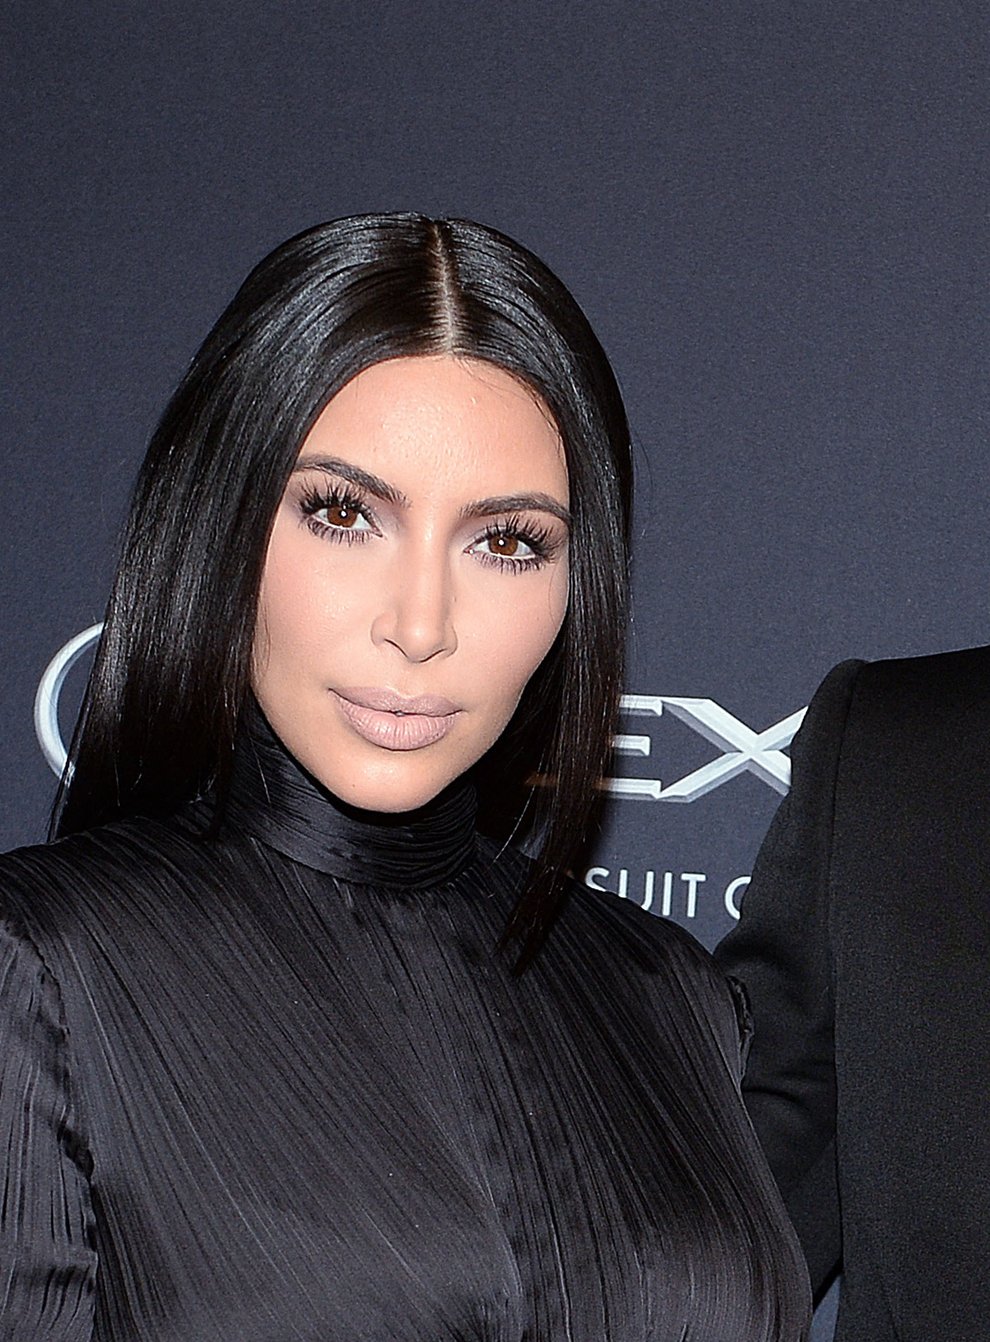 West has apologised to Kardashian